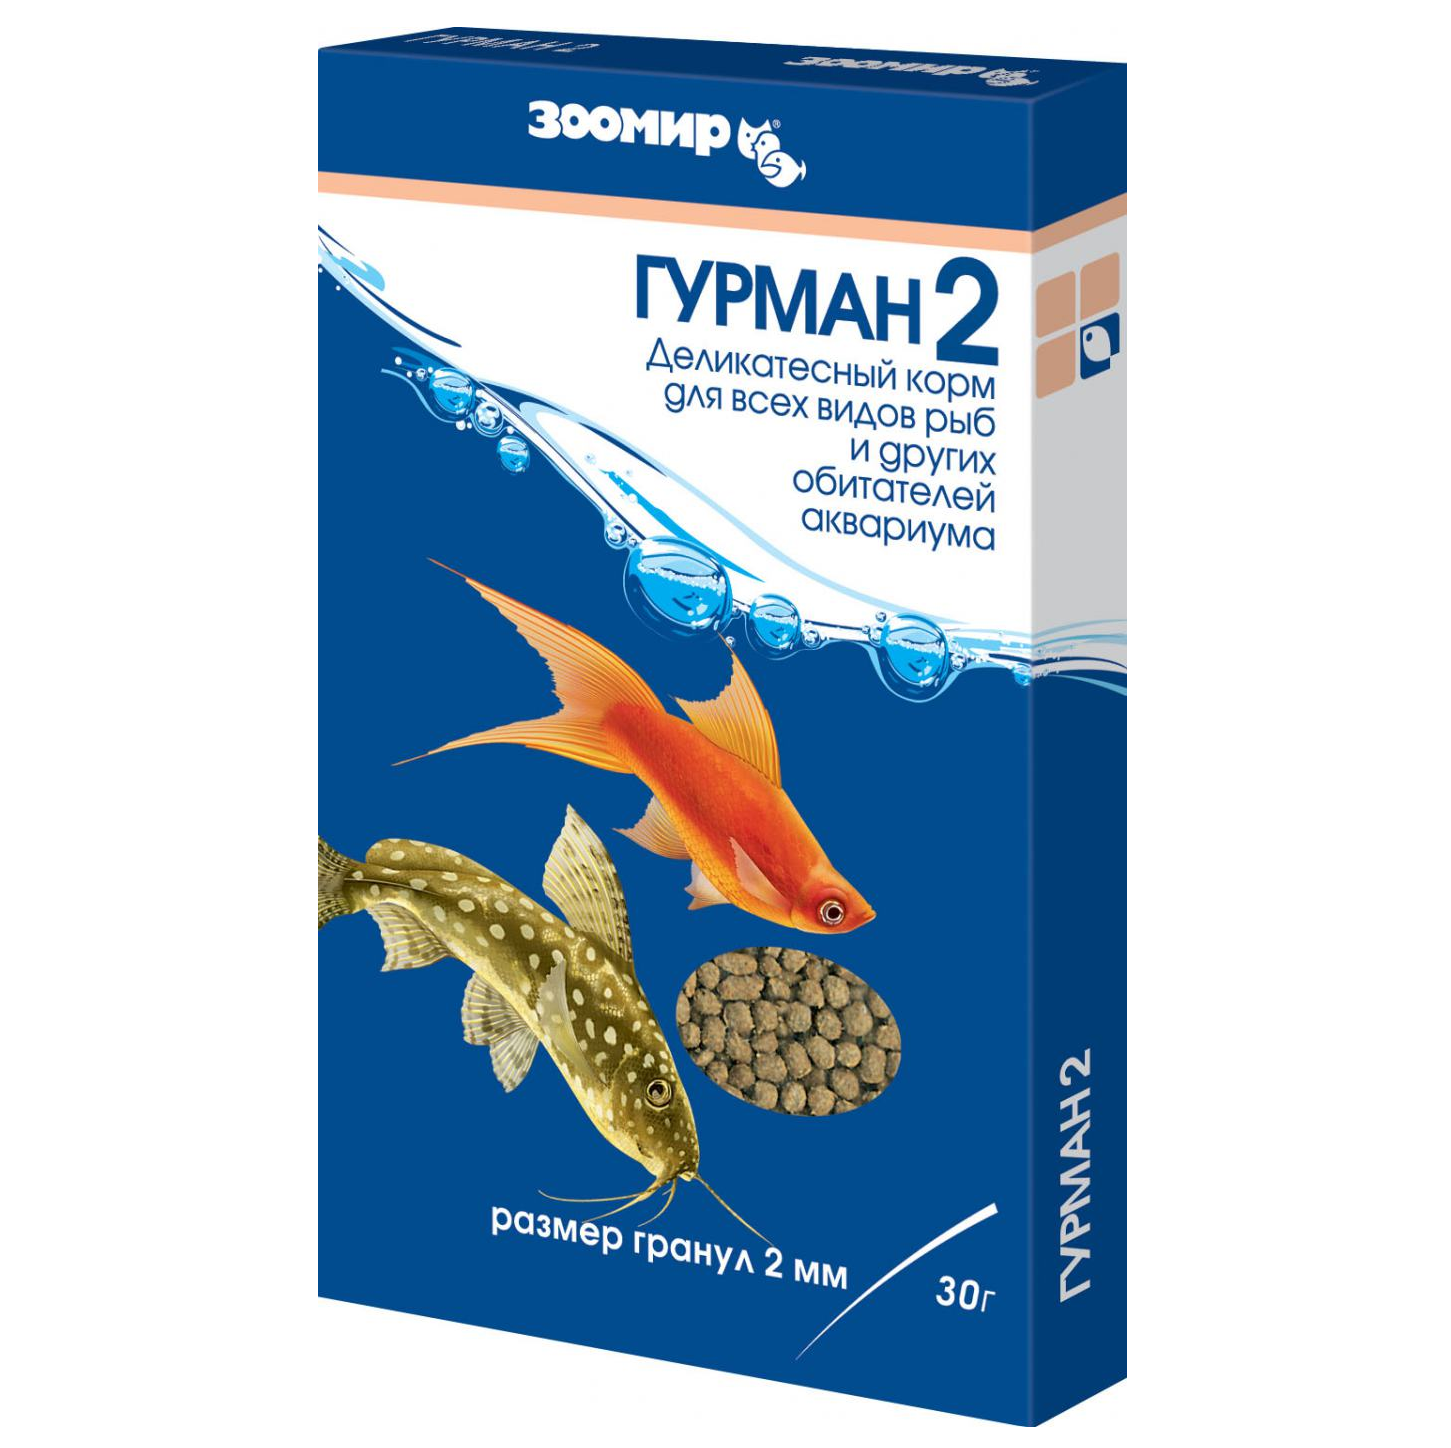 ЗООМИР Гурман - 2 мм б/п, 30г (гранулы) купить в Новосибирске